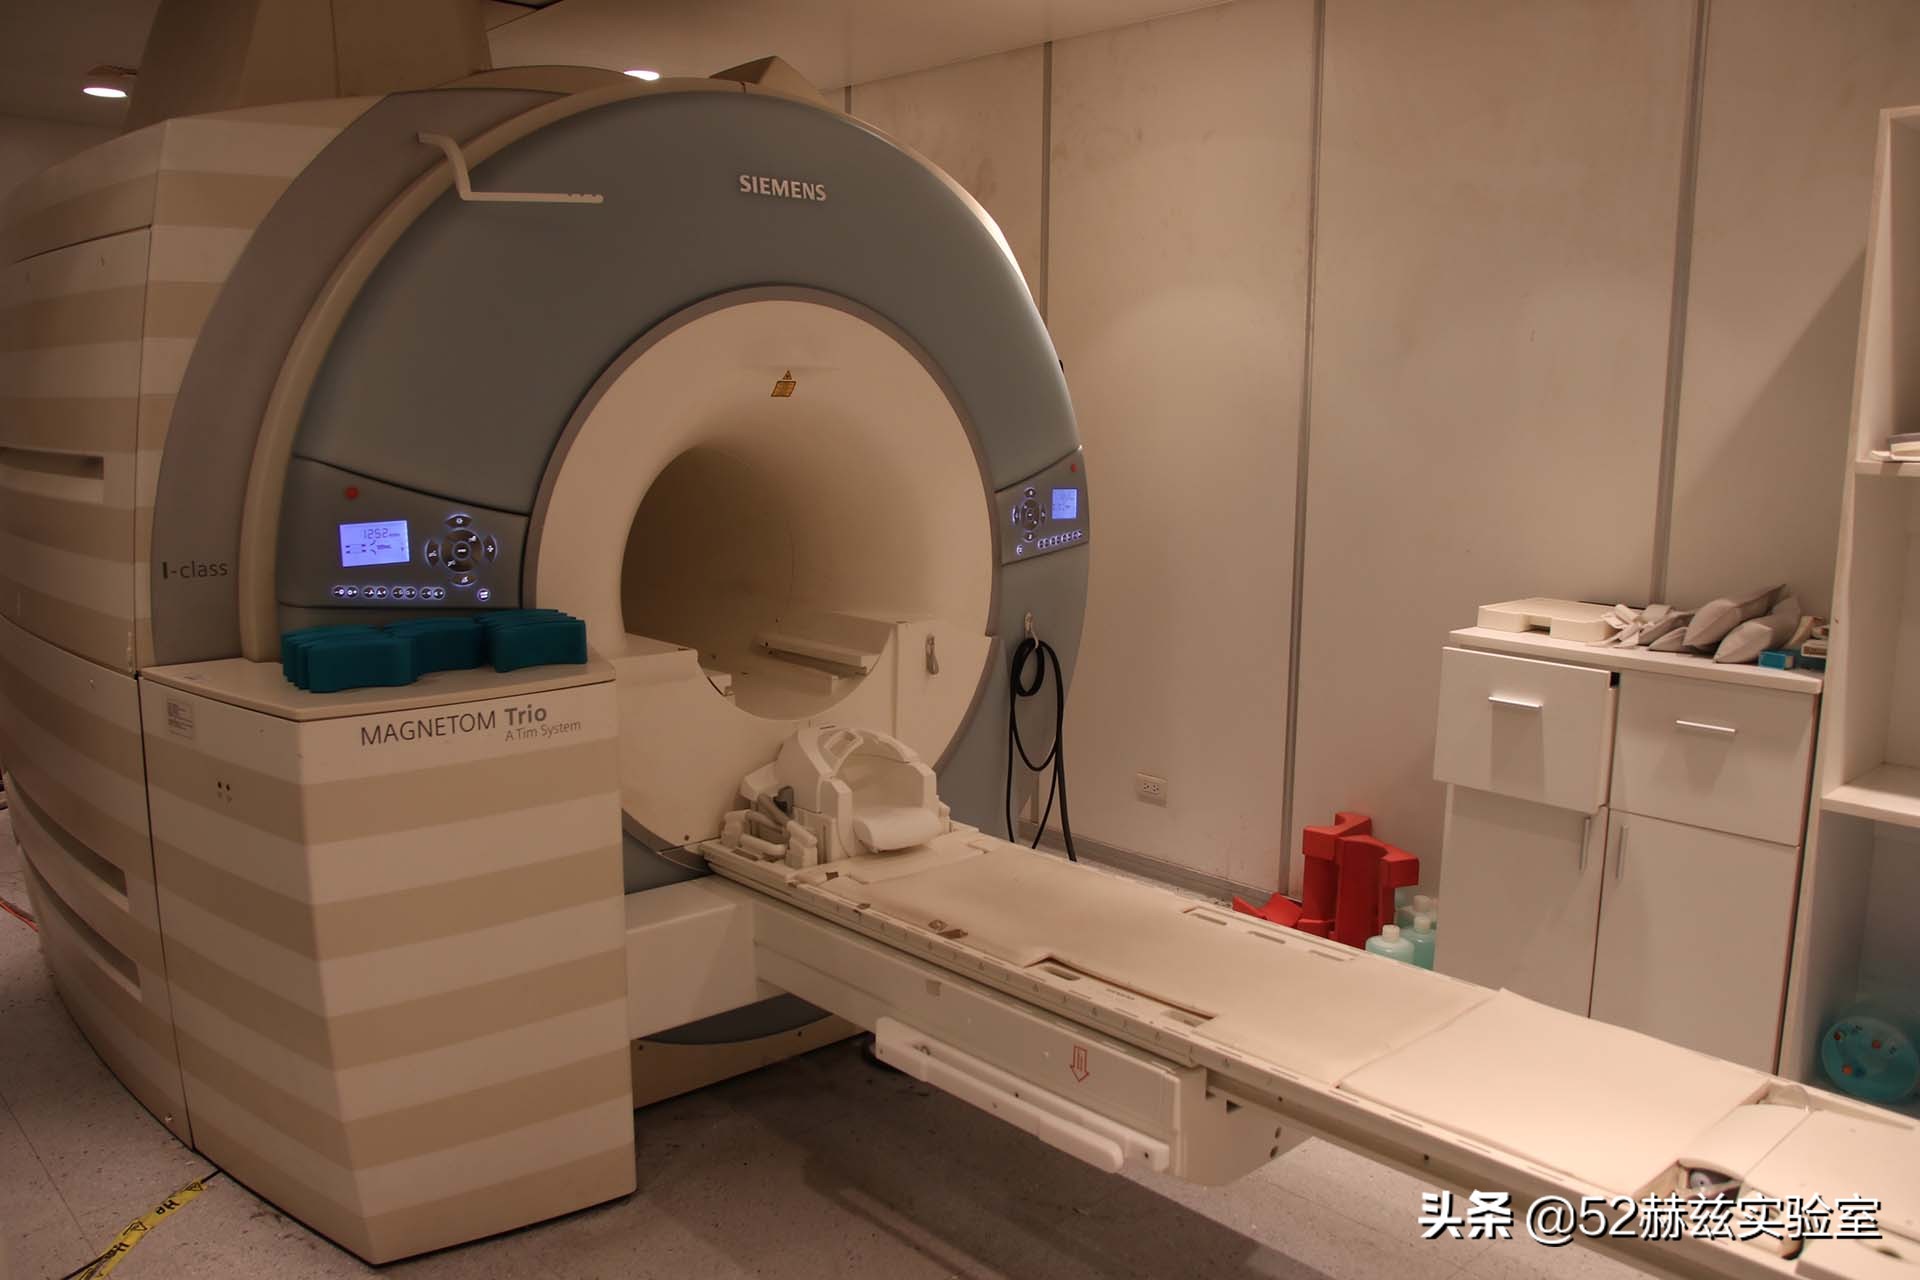 医院的核磁共振仪究竟有多厉害？为何能被国外垄断？